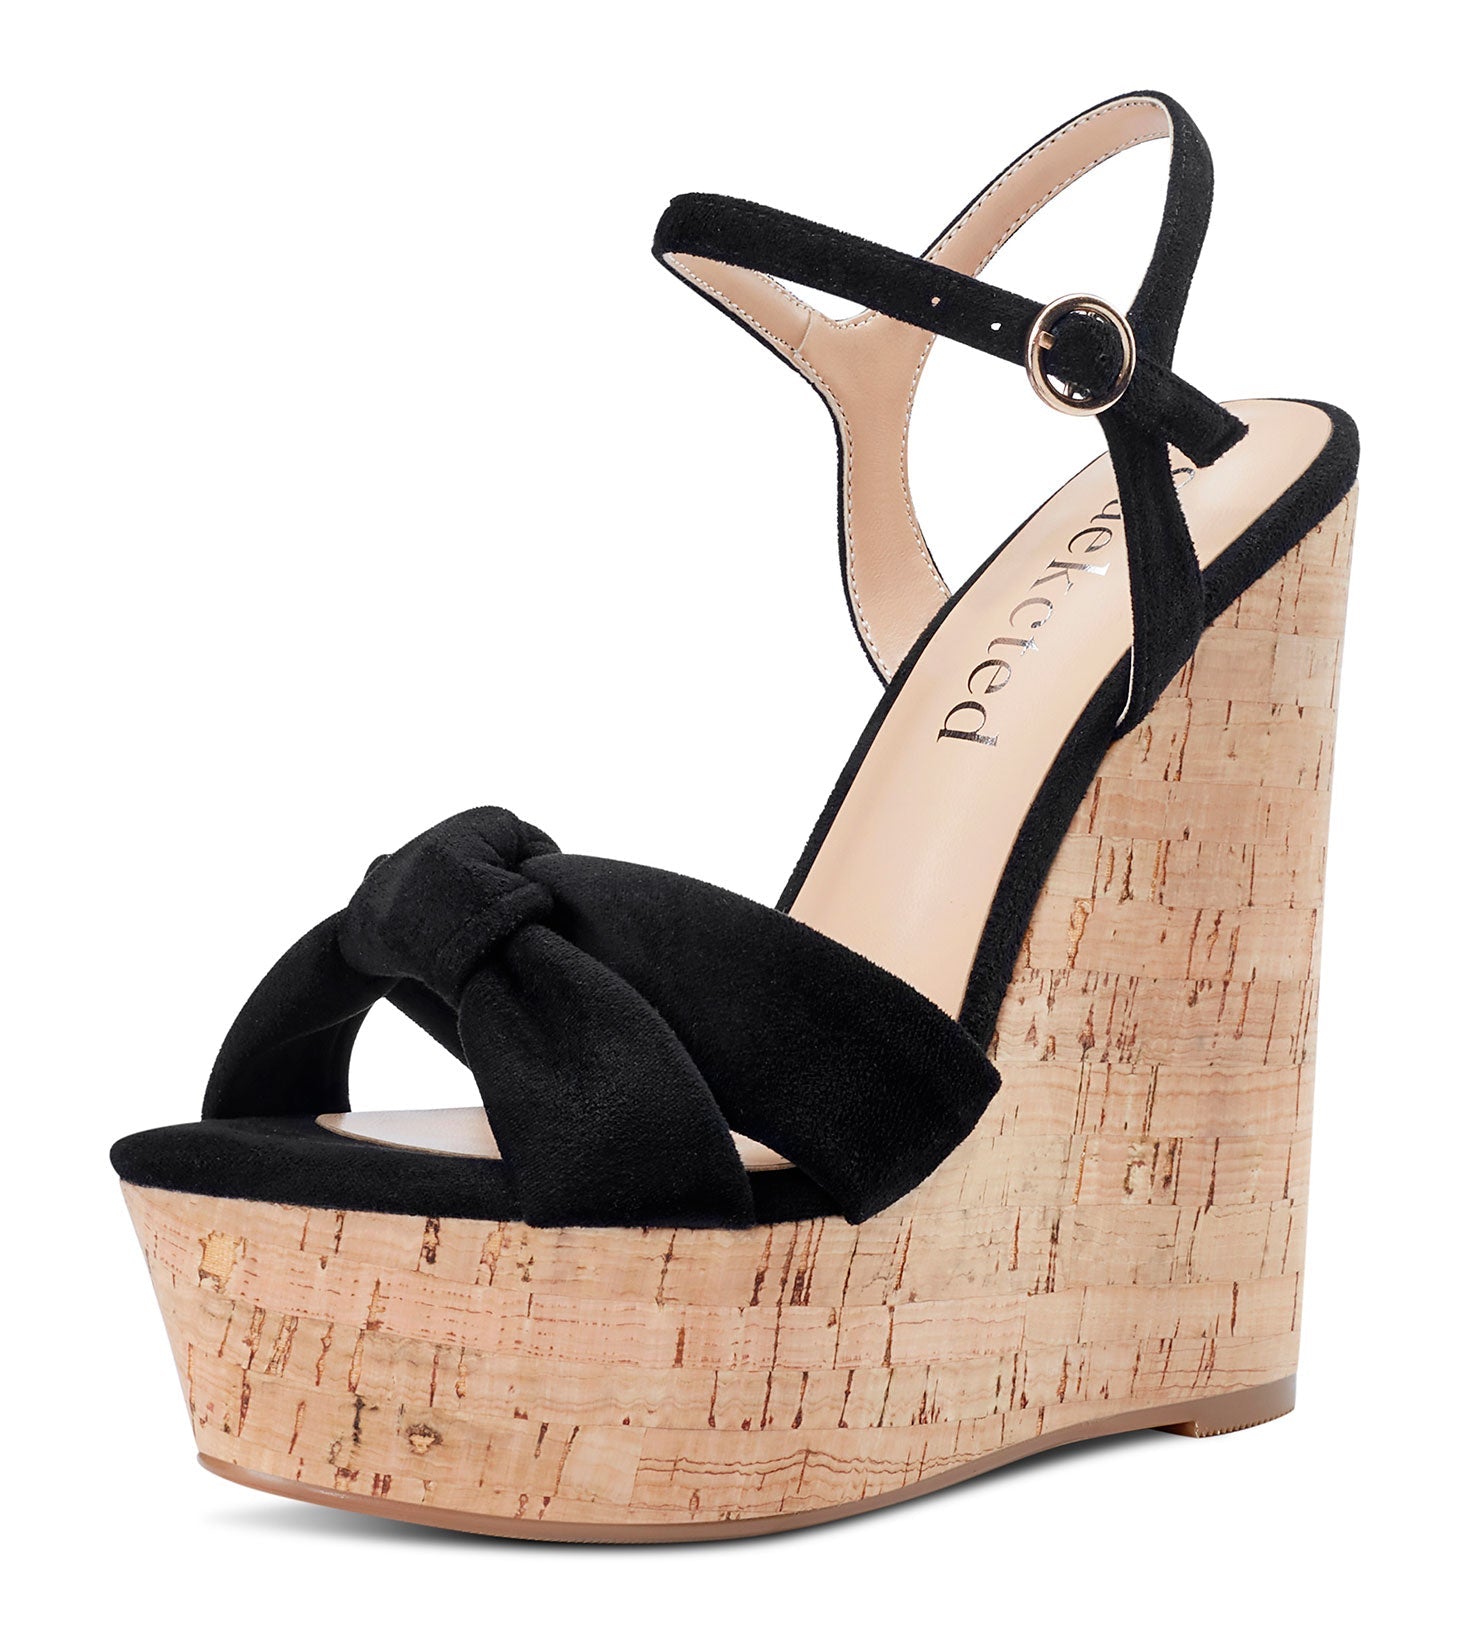 220 6 inch heels ideas | heels, high heels, stiletto heels